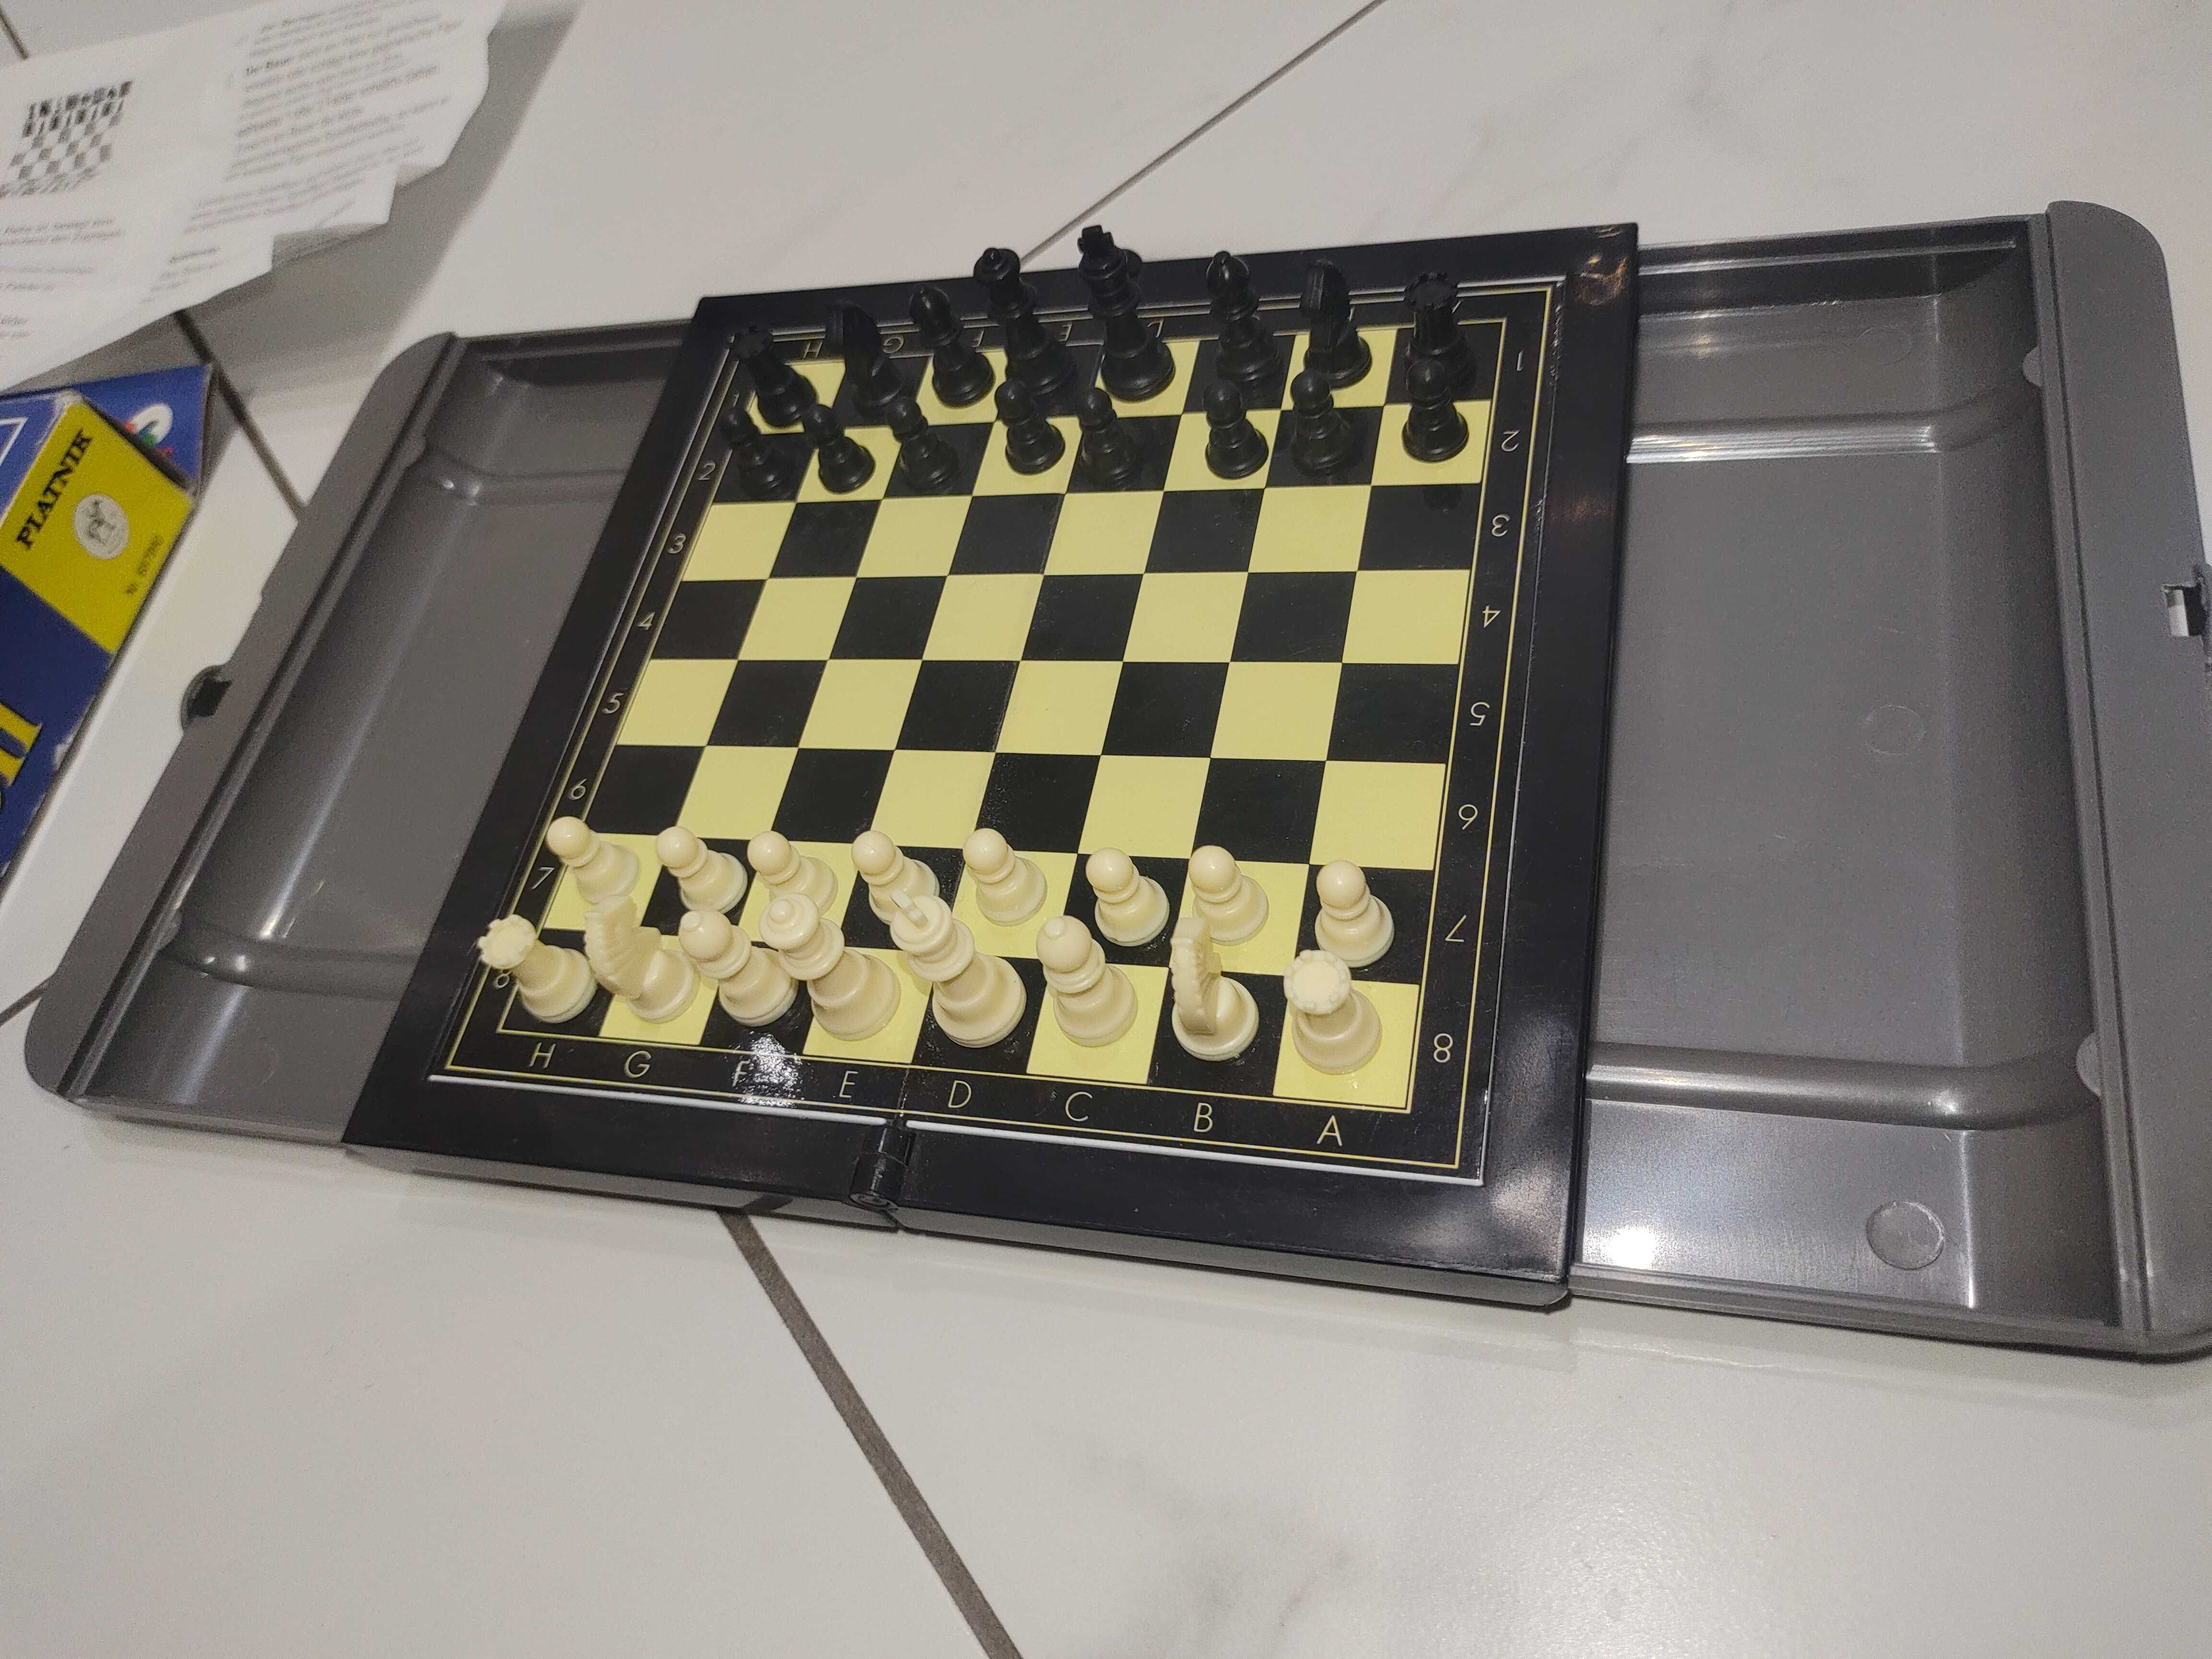 Шахматы Piatnik 20.5 см. x 17.5 см. Складные на магнитах.